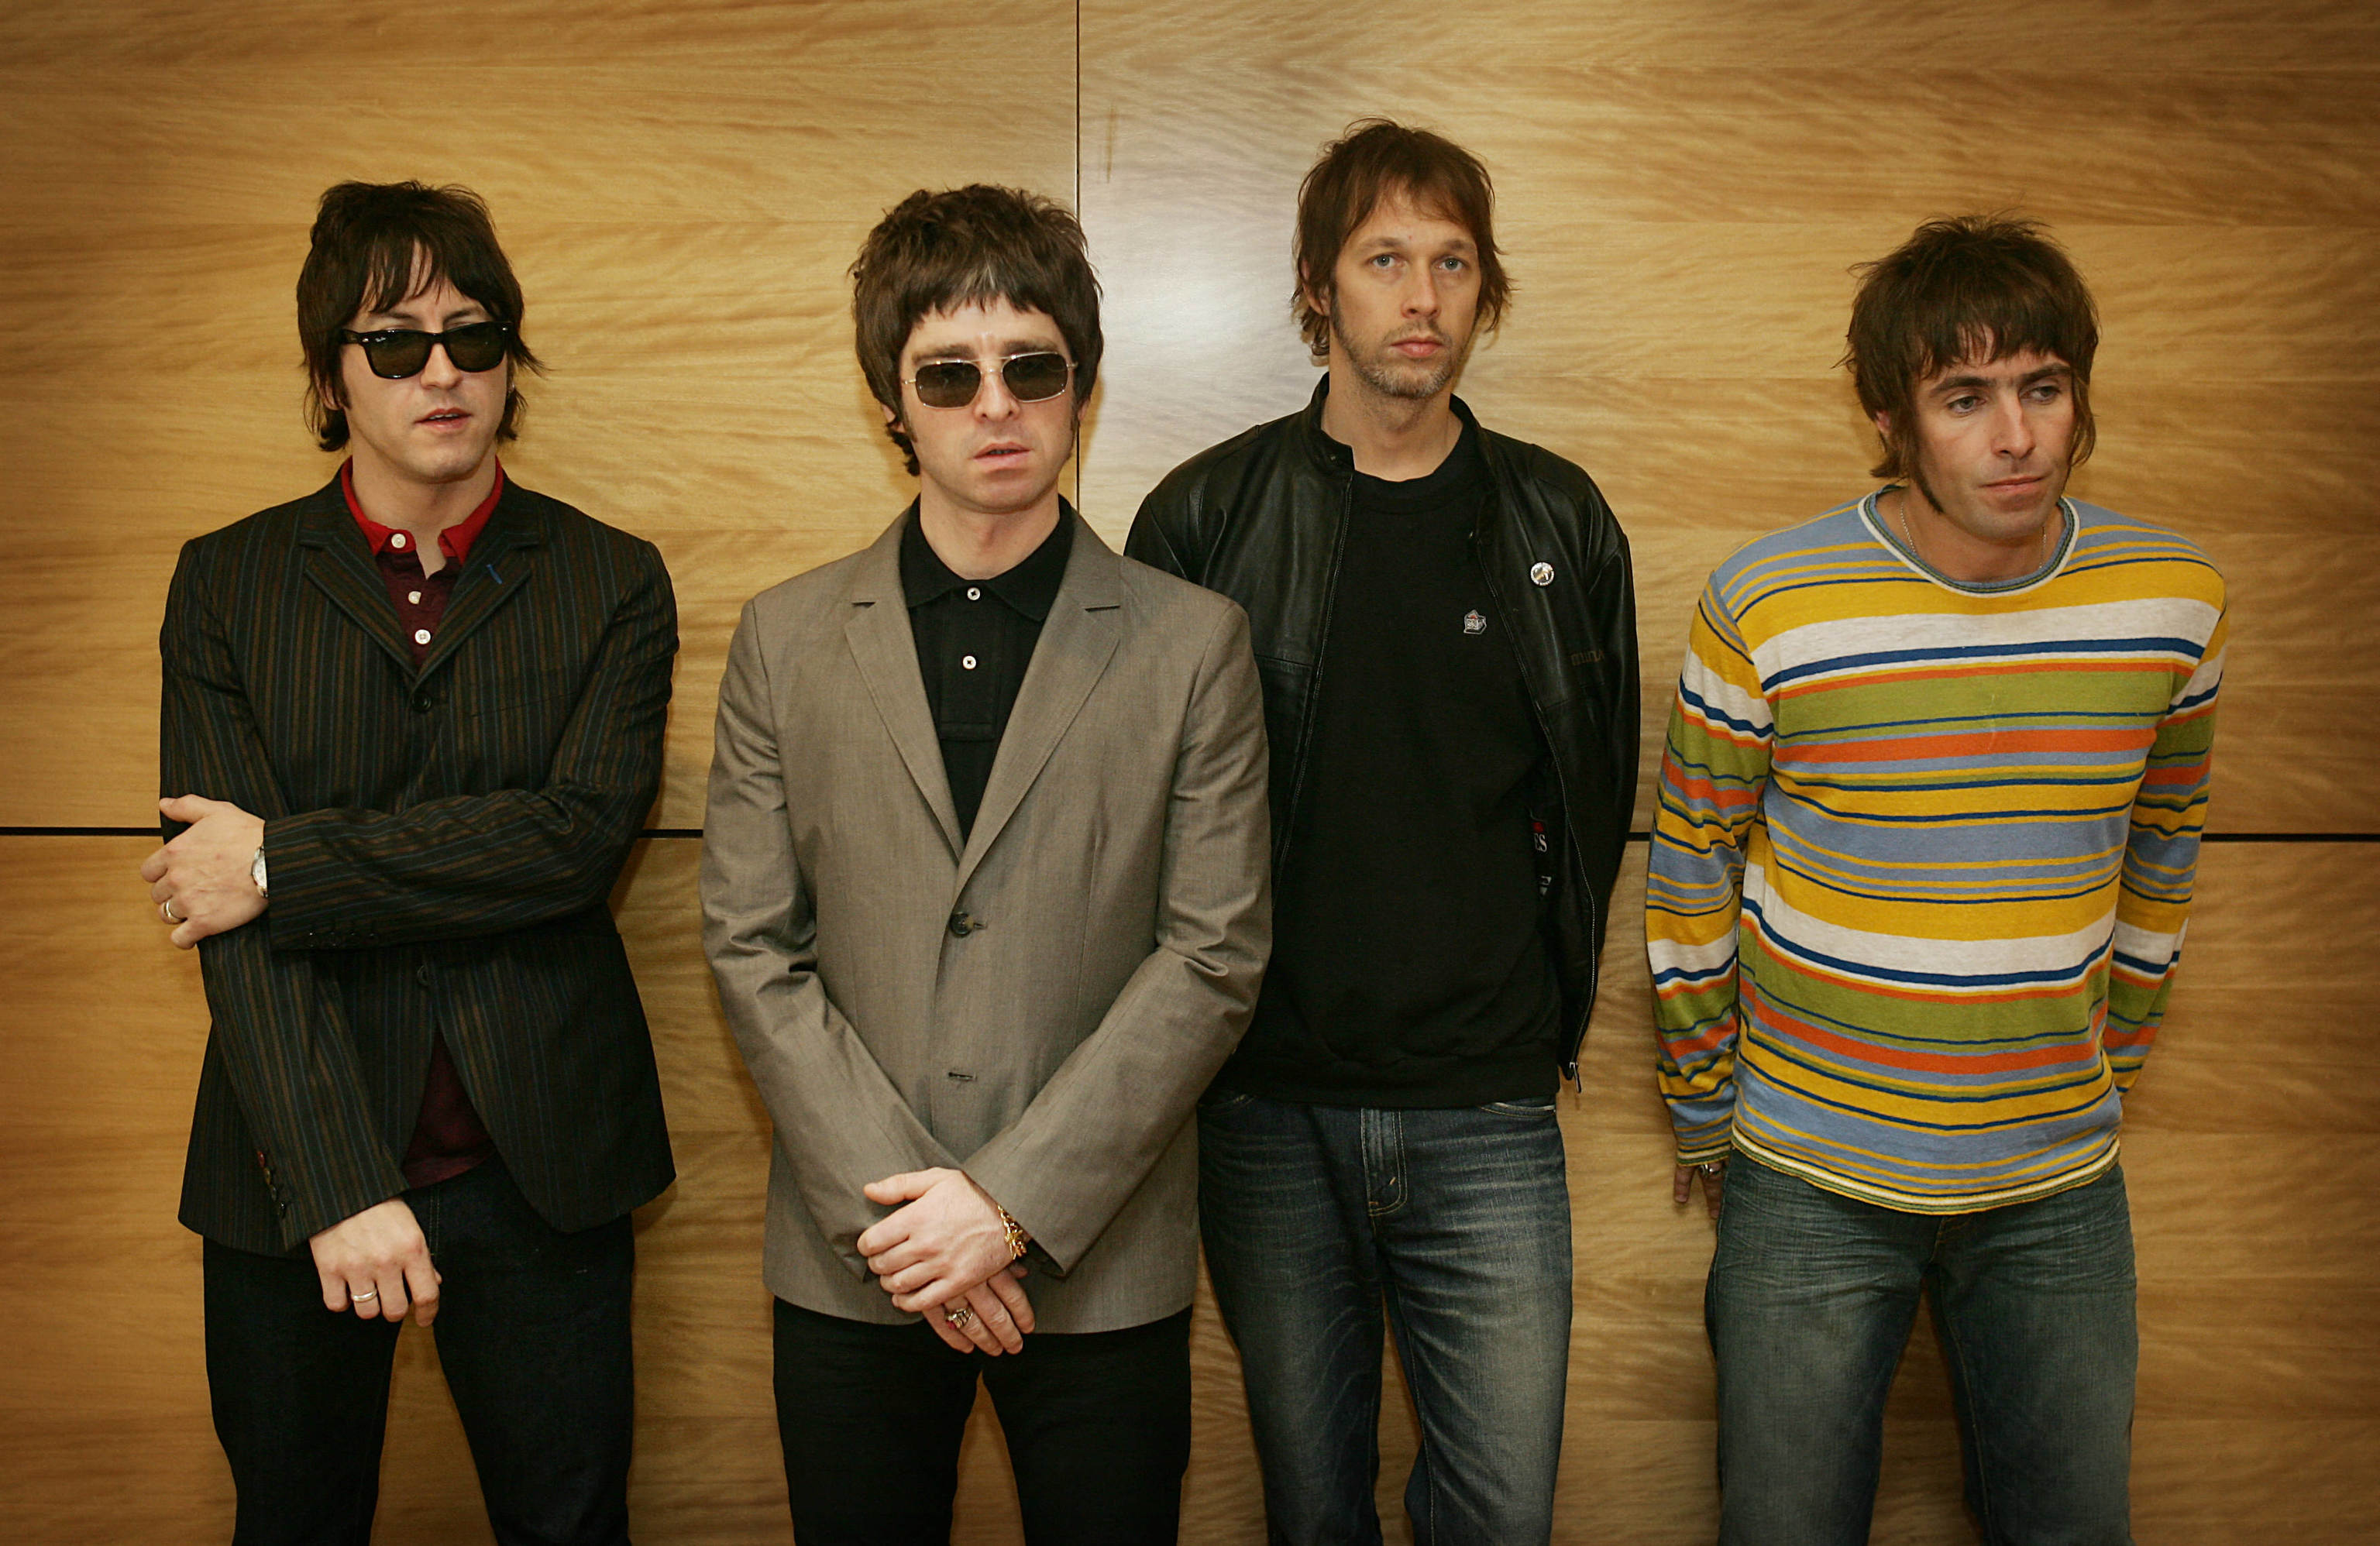 La banda britnica Oasis en 2006.